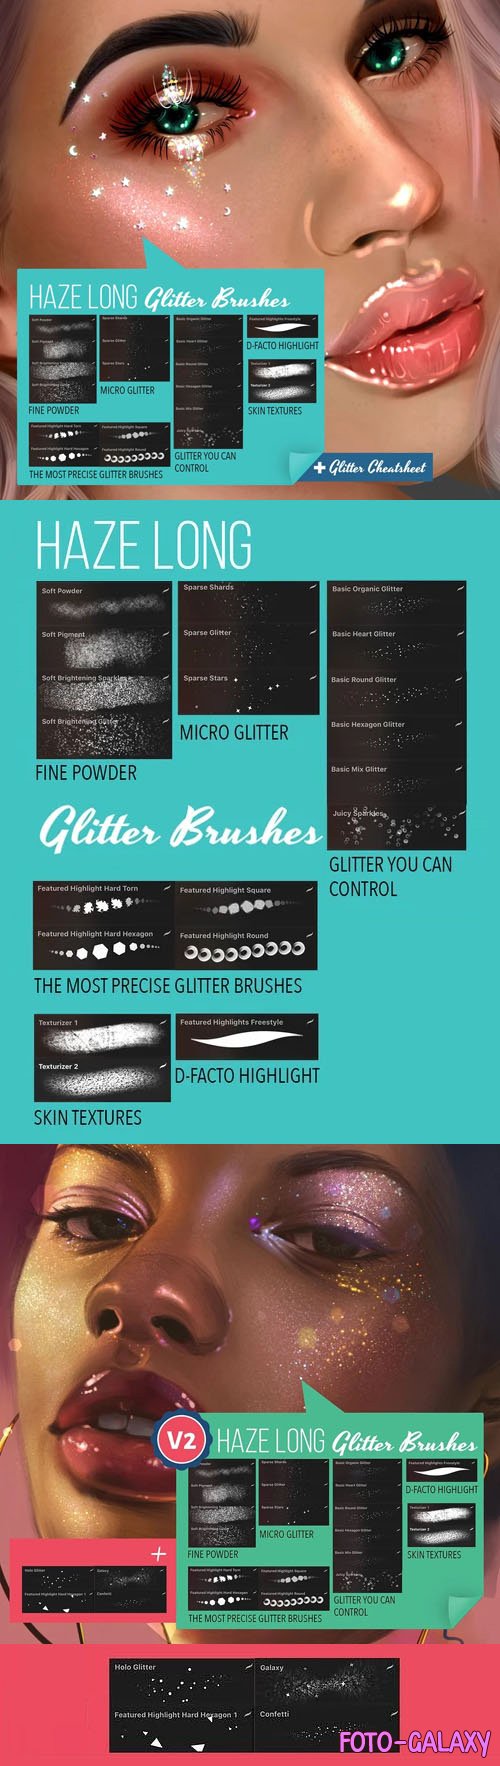 Haze Long Glitter Brushes for Procreate [V1+V2]